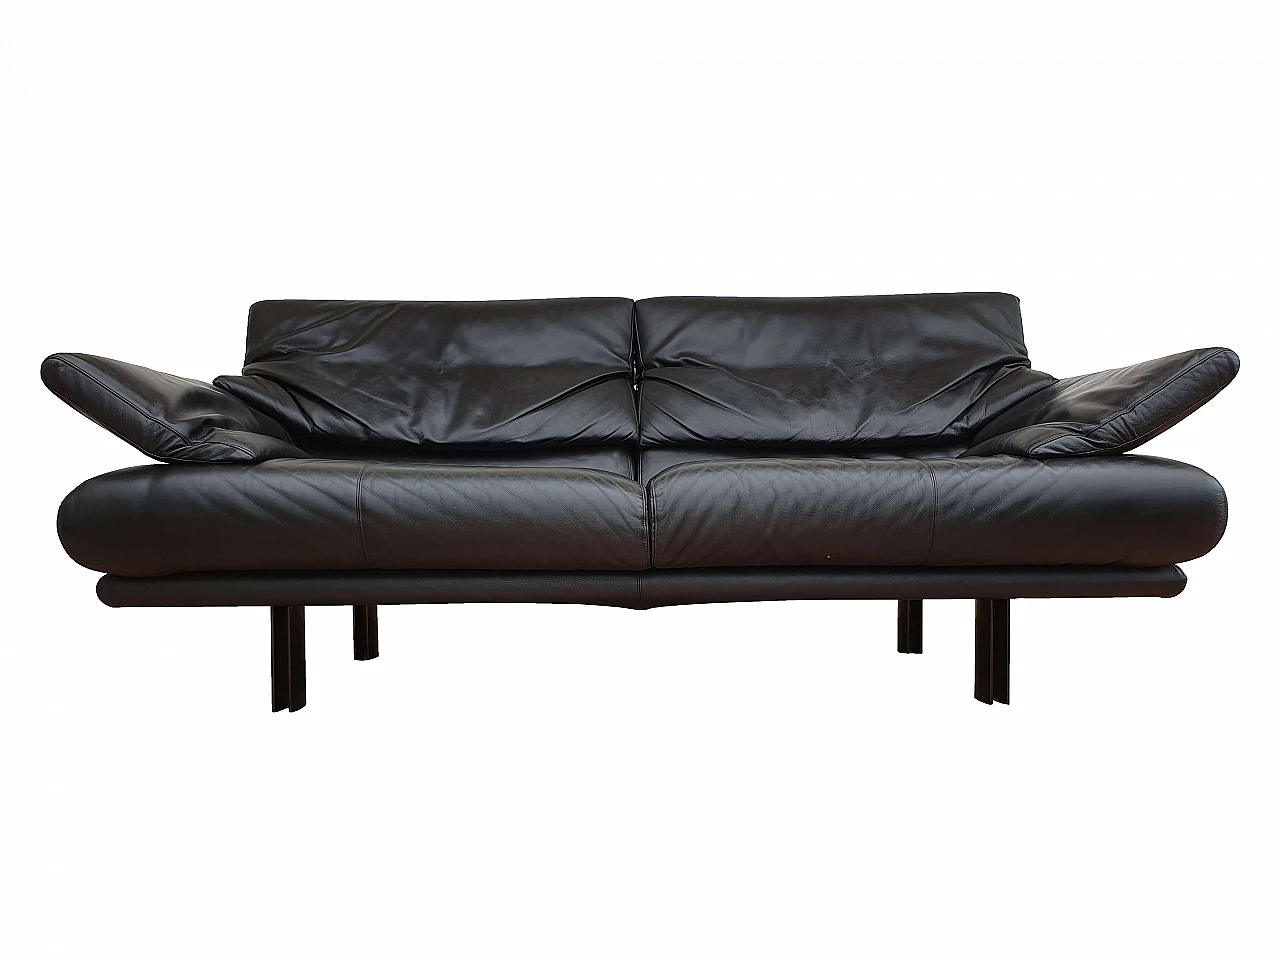 Sofa "Alanda", Paolo Piva for B&B Italia, leather 1066791